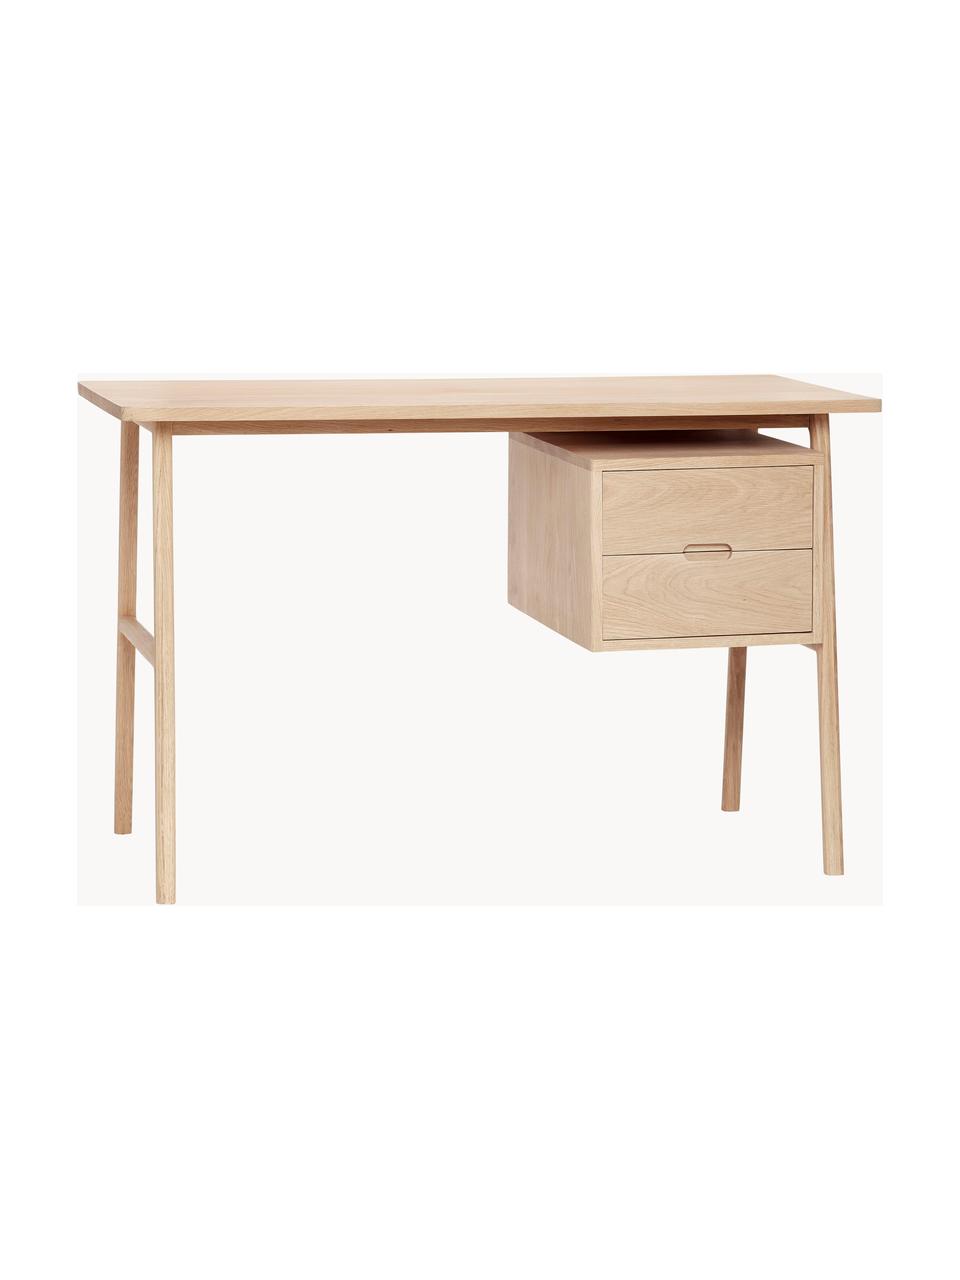 Holz-Schreibtisch Architect mit Schubladen, Eichenholzfurnier, Eichenholz, FSC-zertifiziert, Eichenholz,, B 120 x T 57 cm